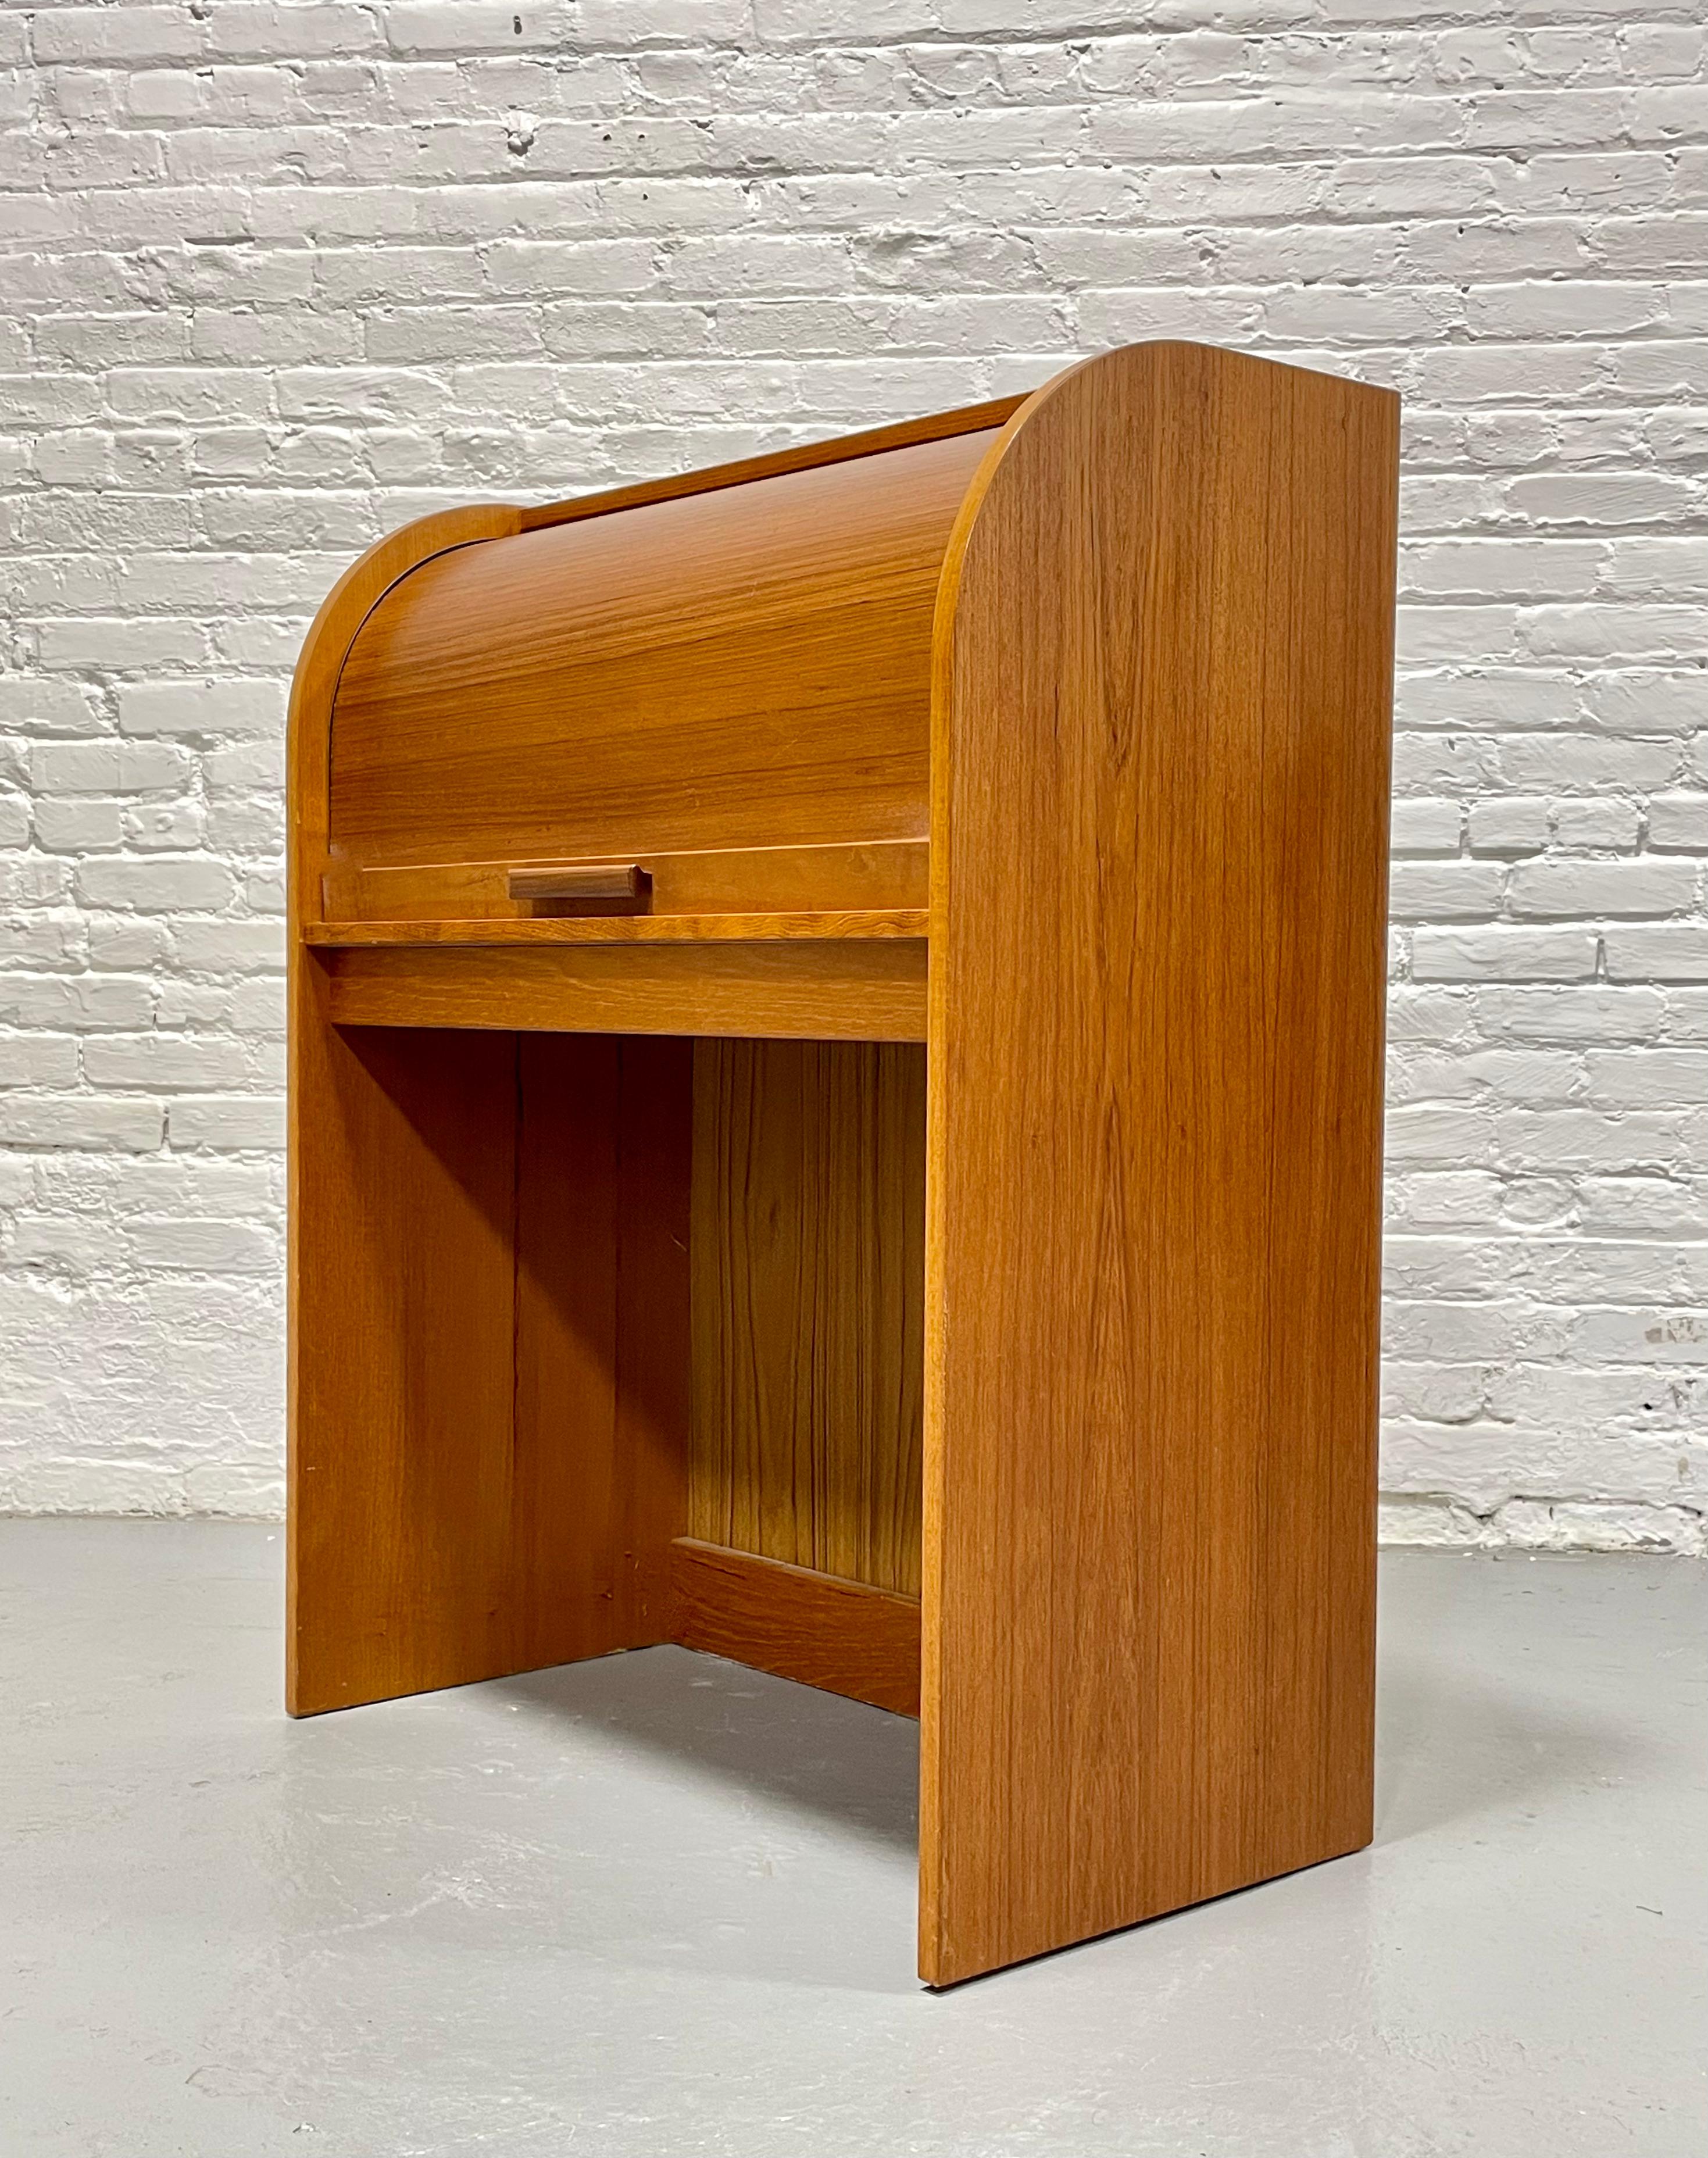 Dänischer Mid Century Modern Teak Tambour Sekretär Schreibtisch, ca. 1960er Jahre. Unglaubliches Profil mit versteckter ausziehbarer Tischplatte und offenem Bereich darunter für Ihren Stuhl. Ziehen Sie sich einen Stuhl heran und arbeiten Sie an